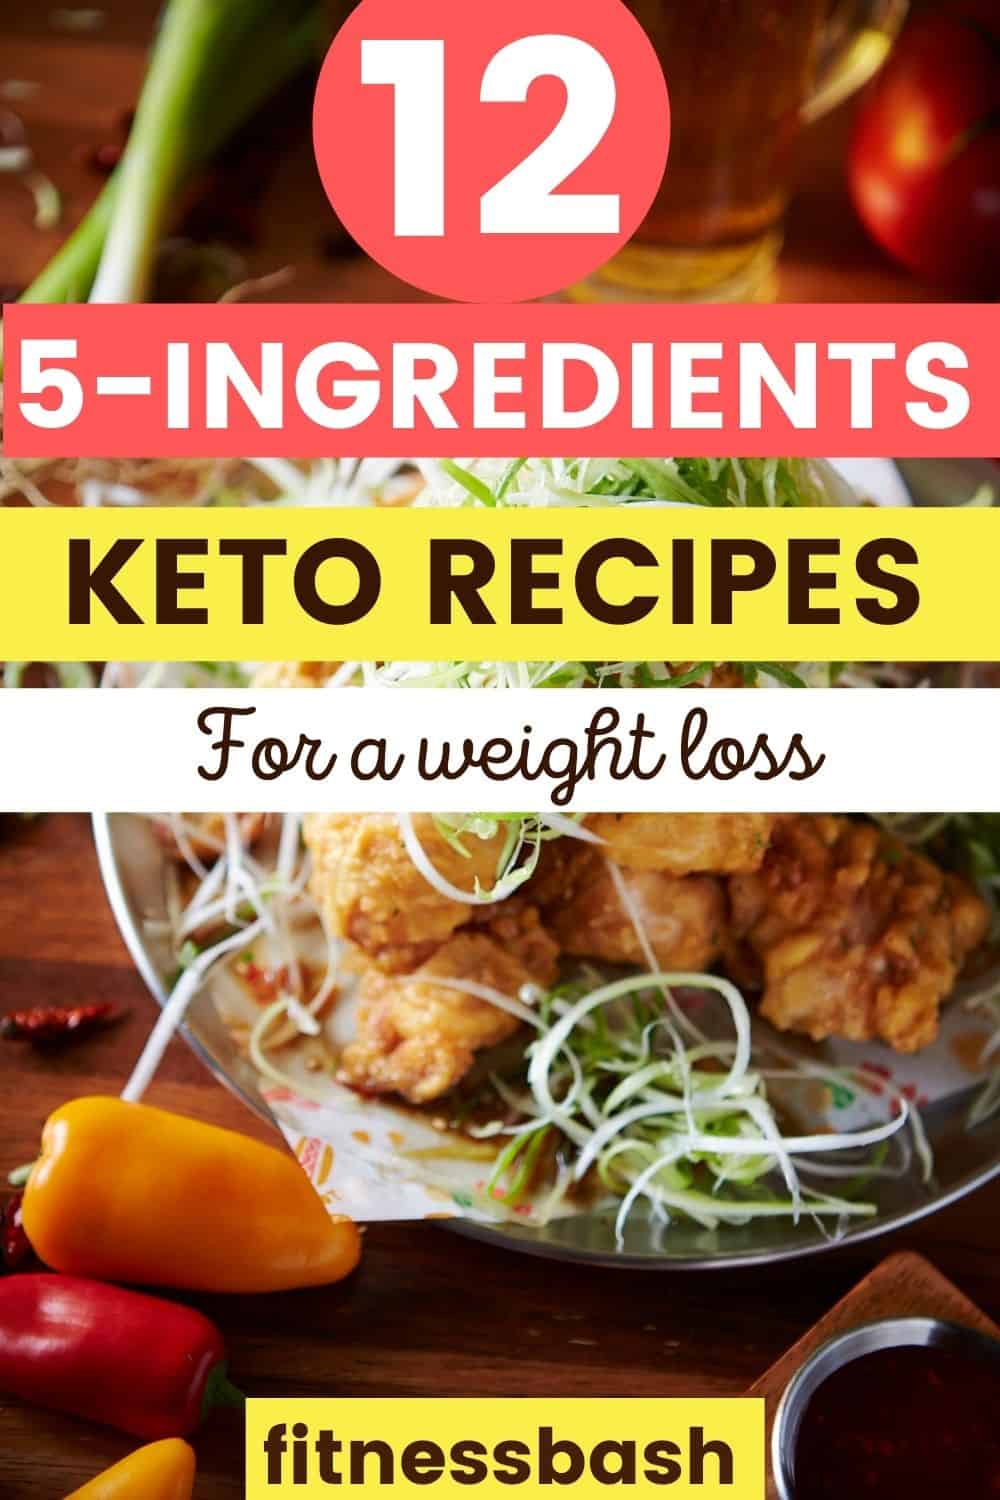 5 ingredient keto recipes